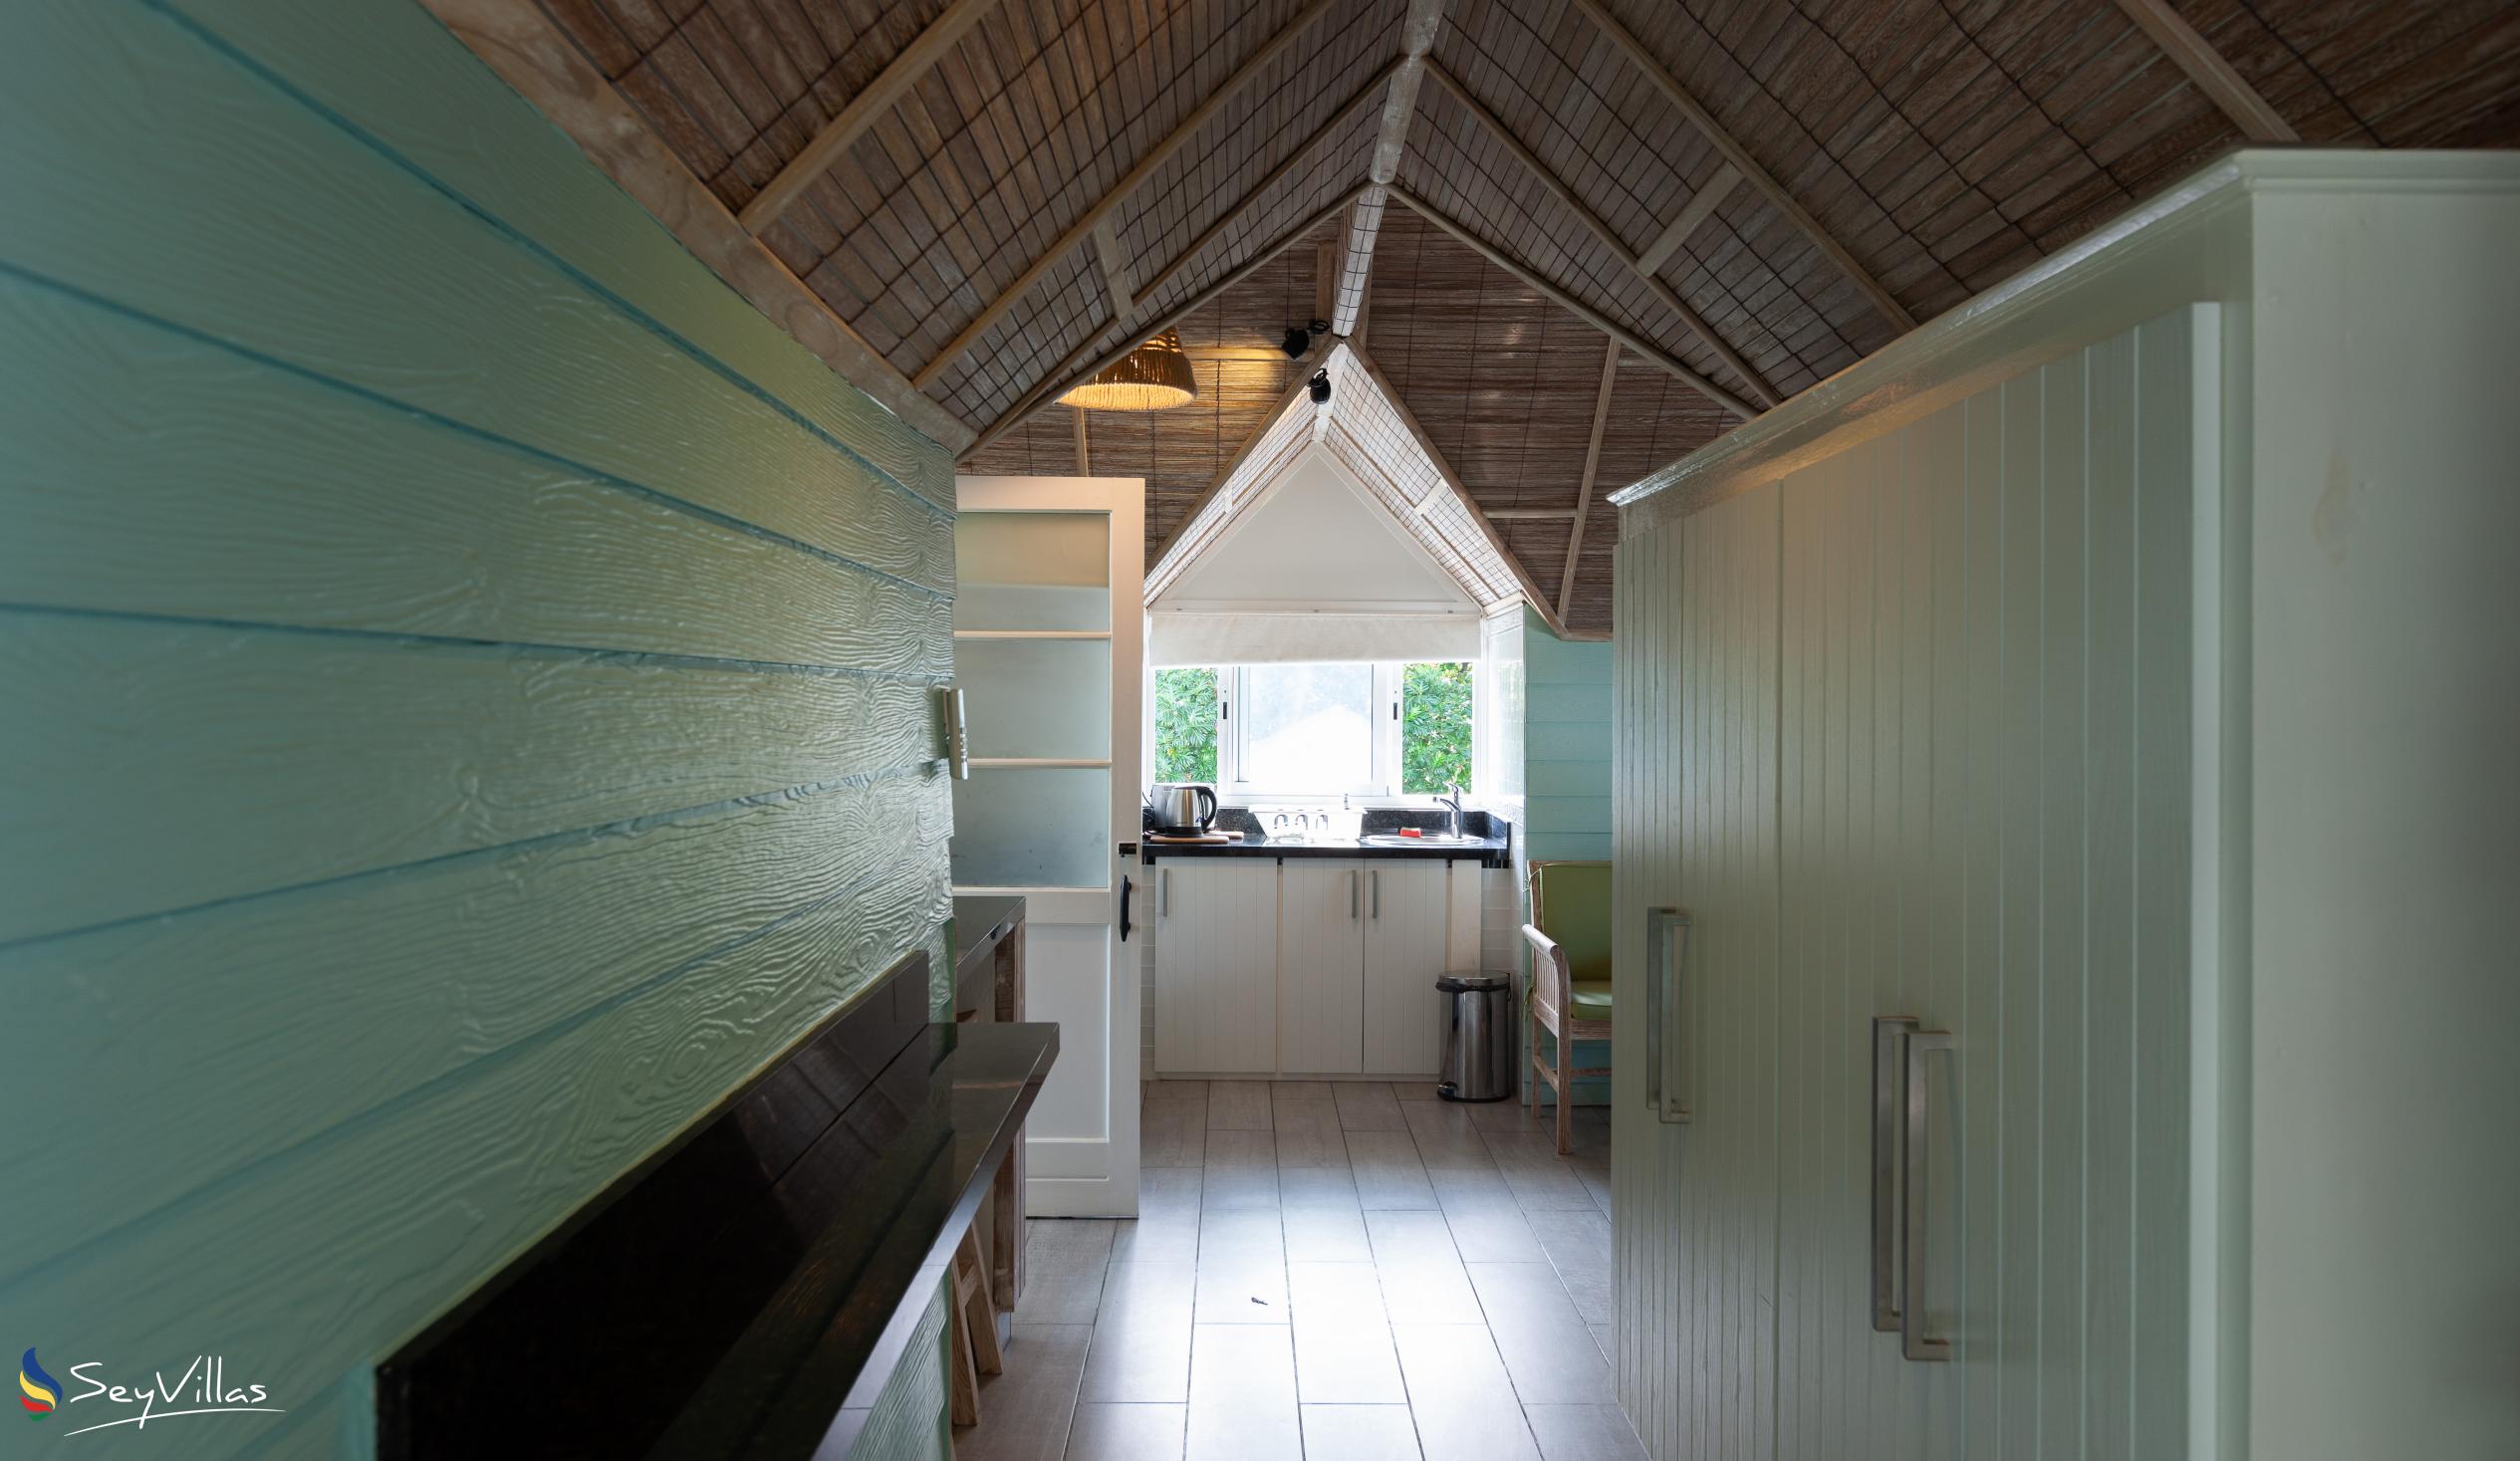 Photo 71: La Digue Self Catering - Loft Studio Apartment - La Digue (Seychelles)